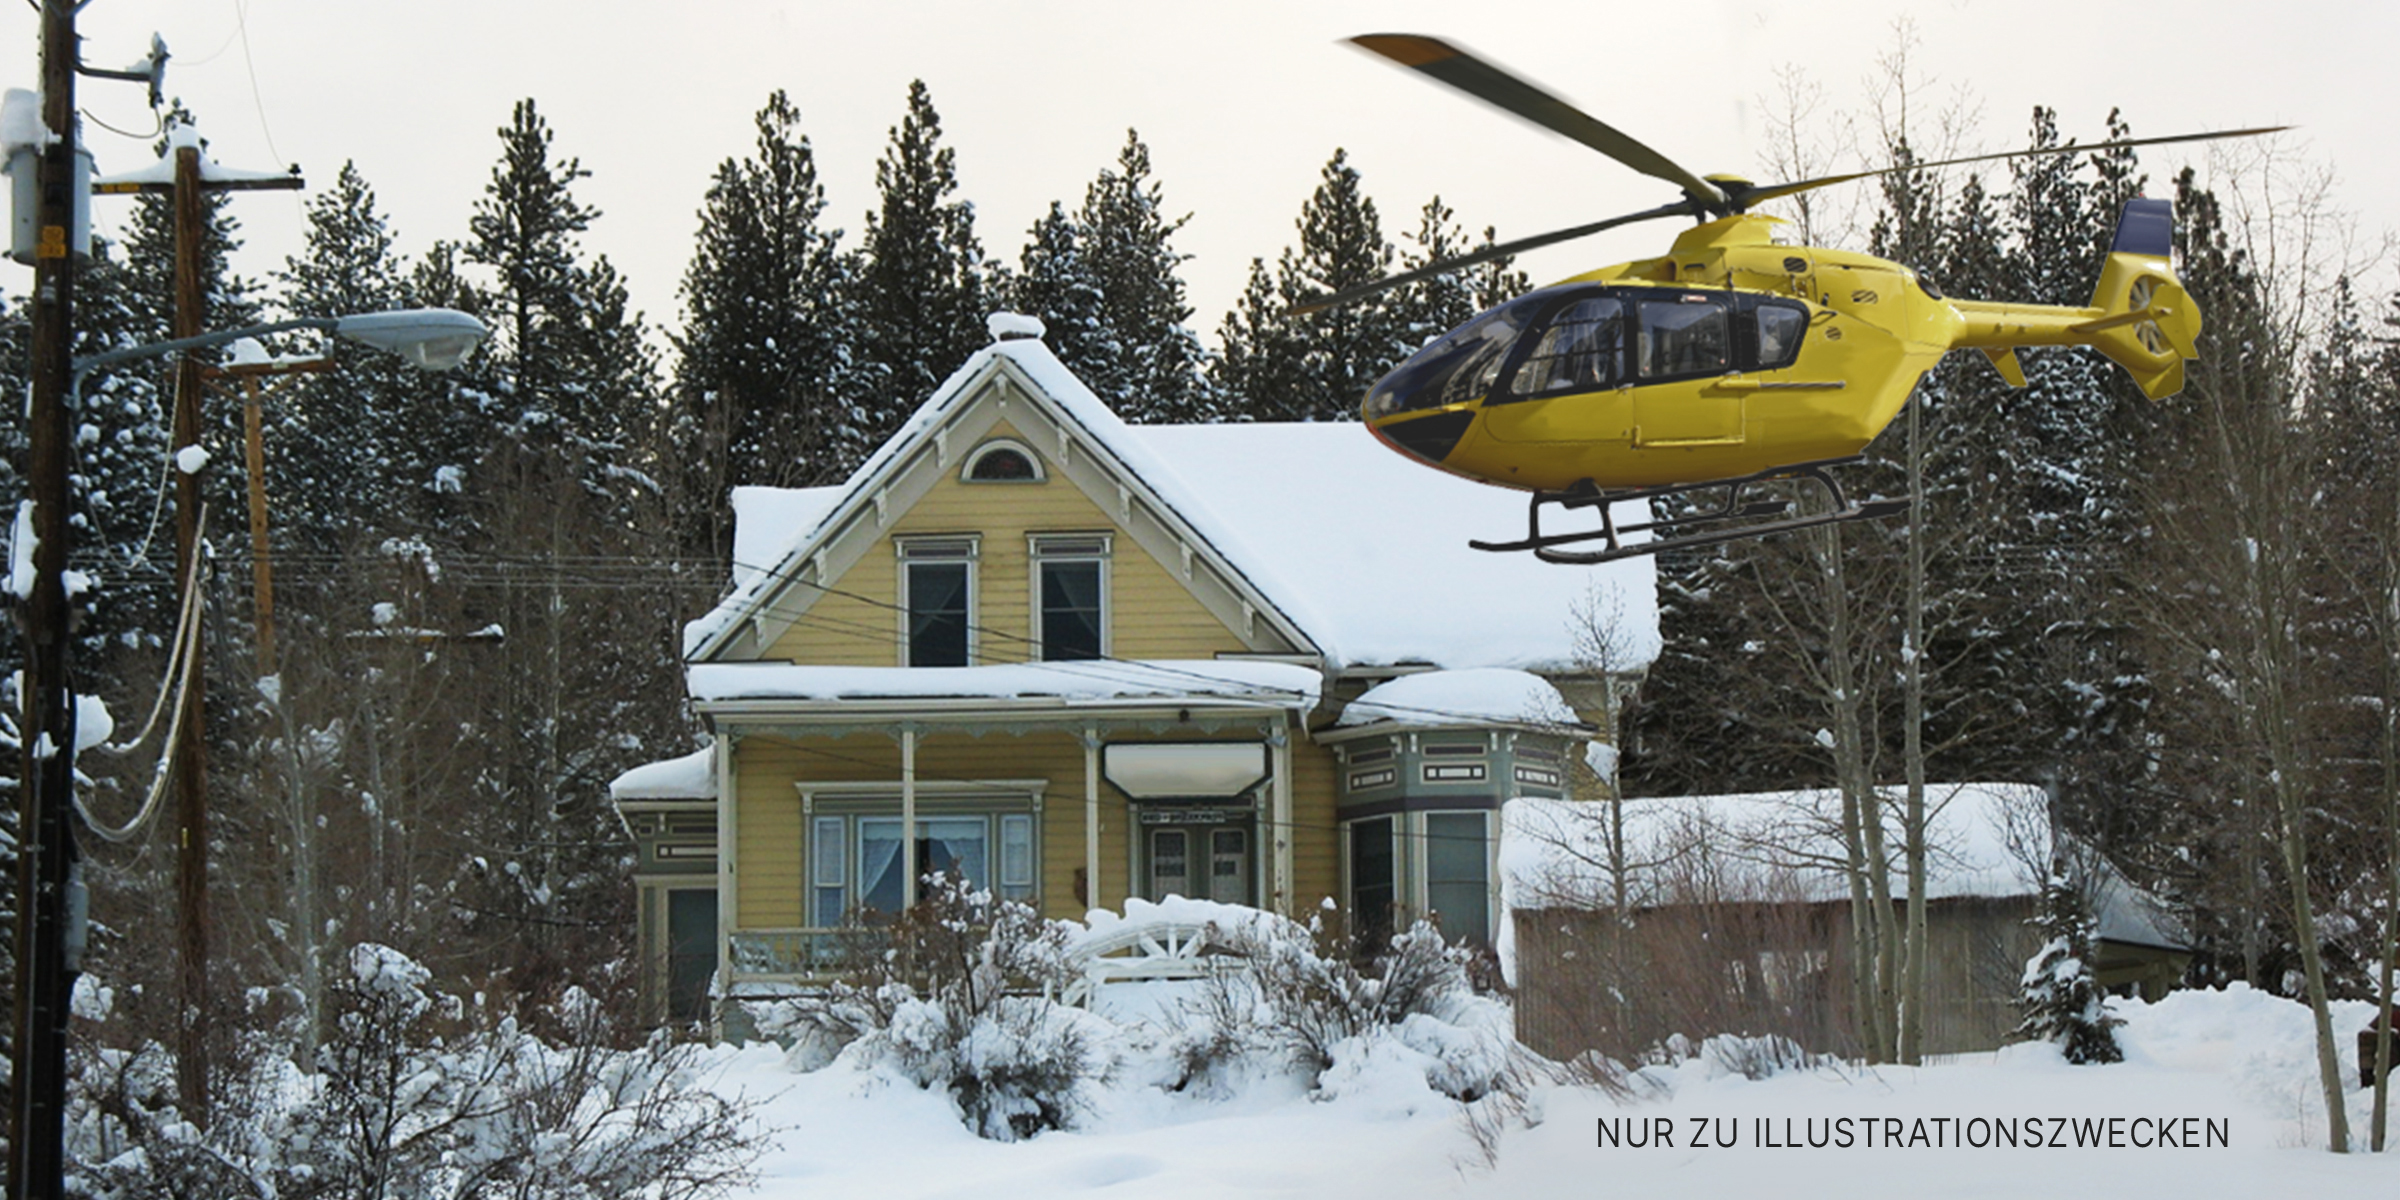 Hubschrauberlandung in der Nähe eines Hauses. | Quelle: Flickr/teofilo (CC BY 2.0)&Shutterstock